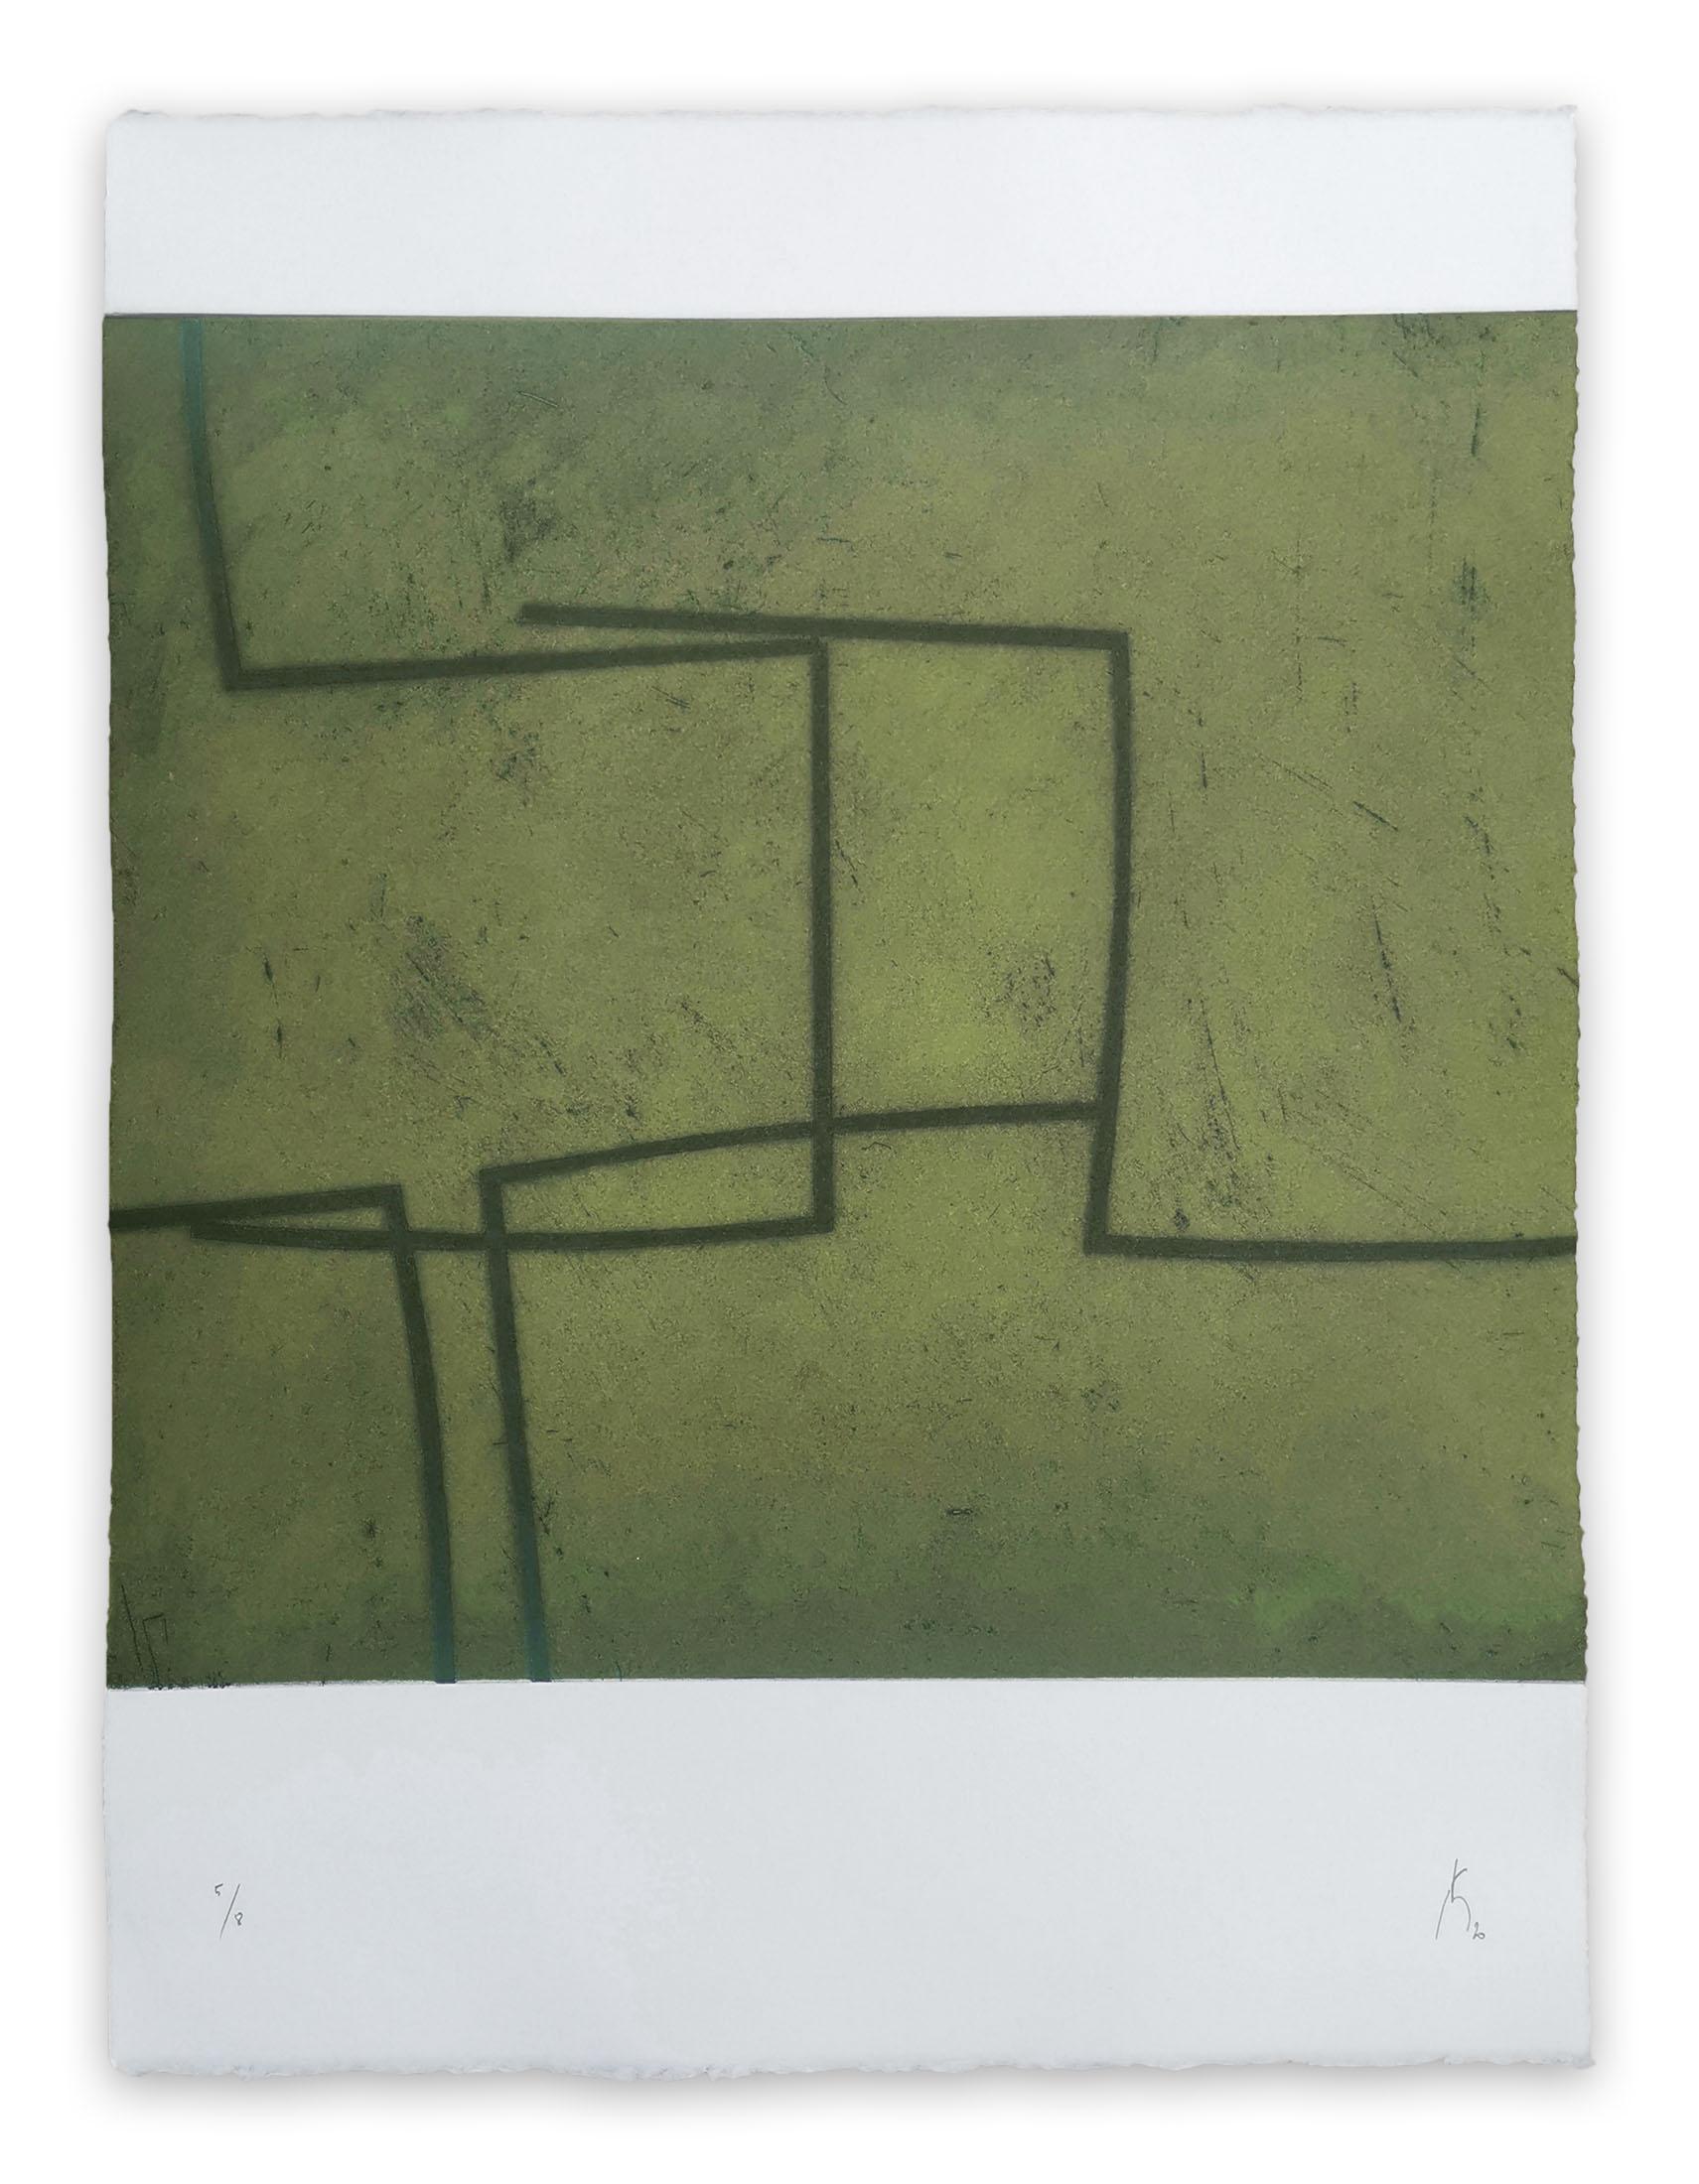 Pierre Muckensturm Abstract Print – 203R0946 (Abstrakter Druck)